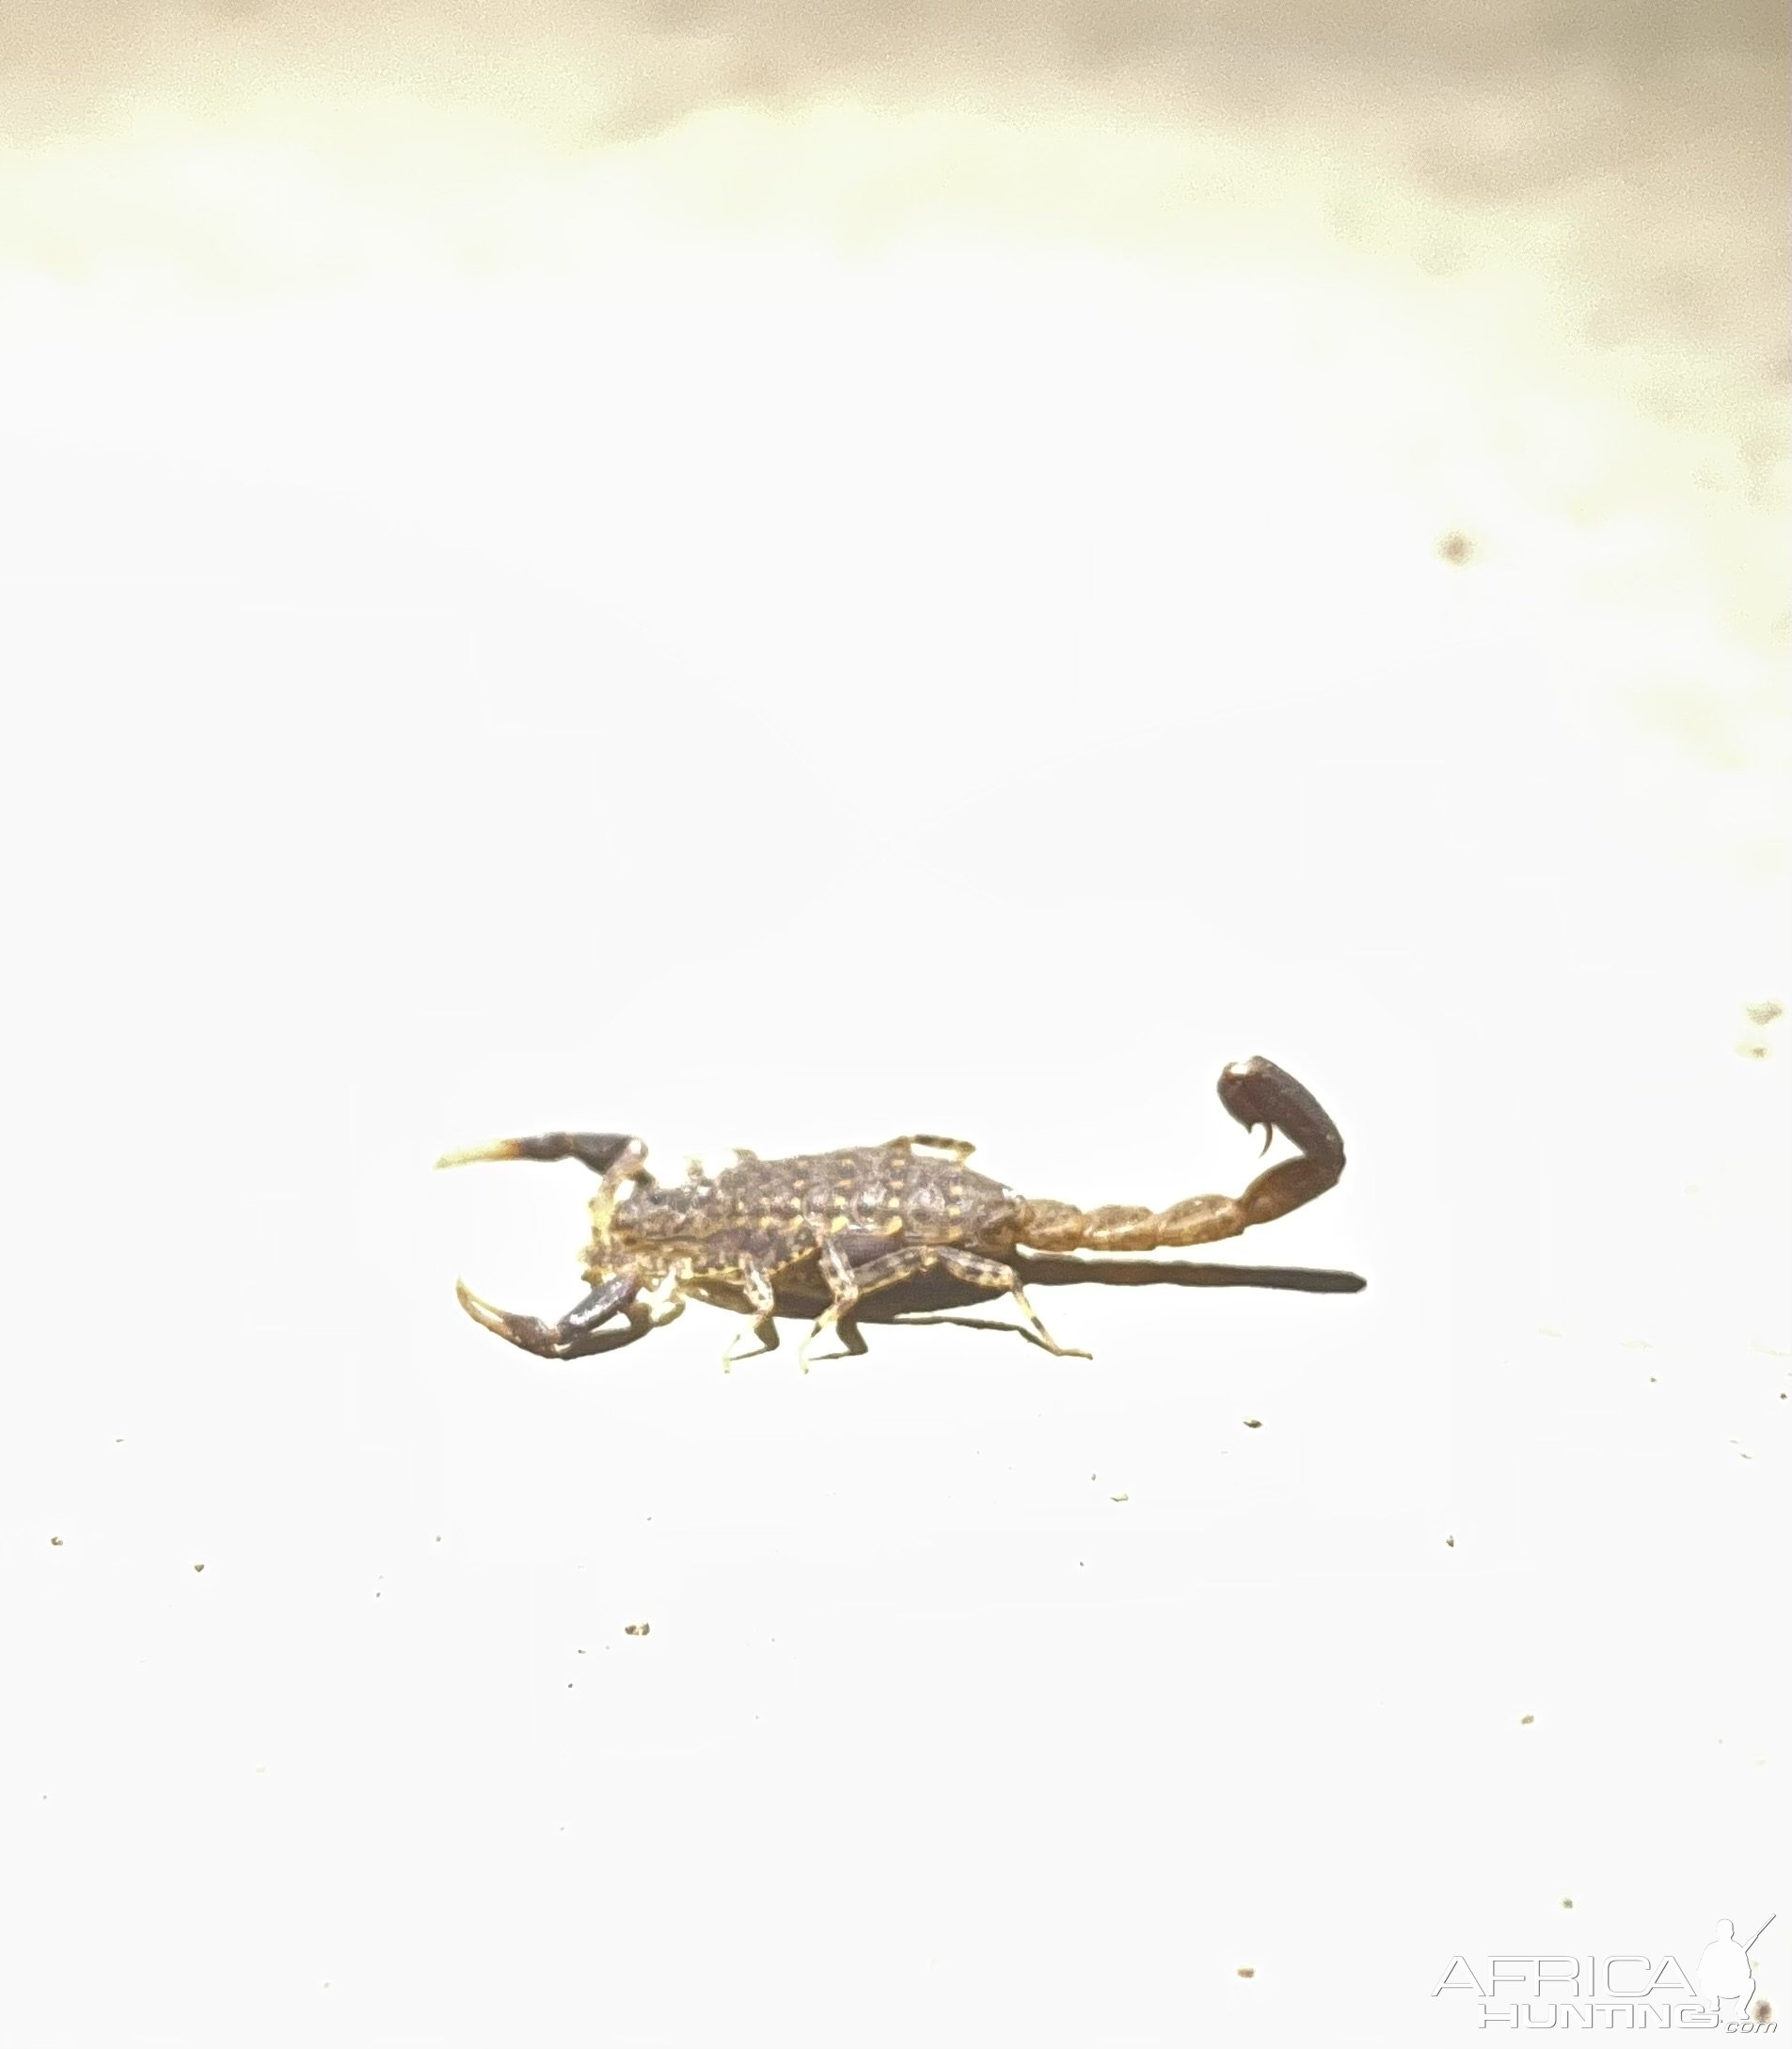 Scorpion Zambia